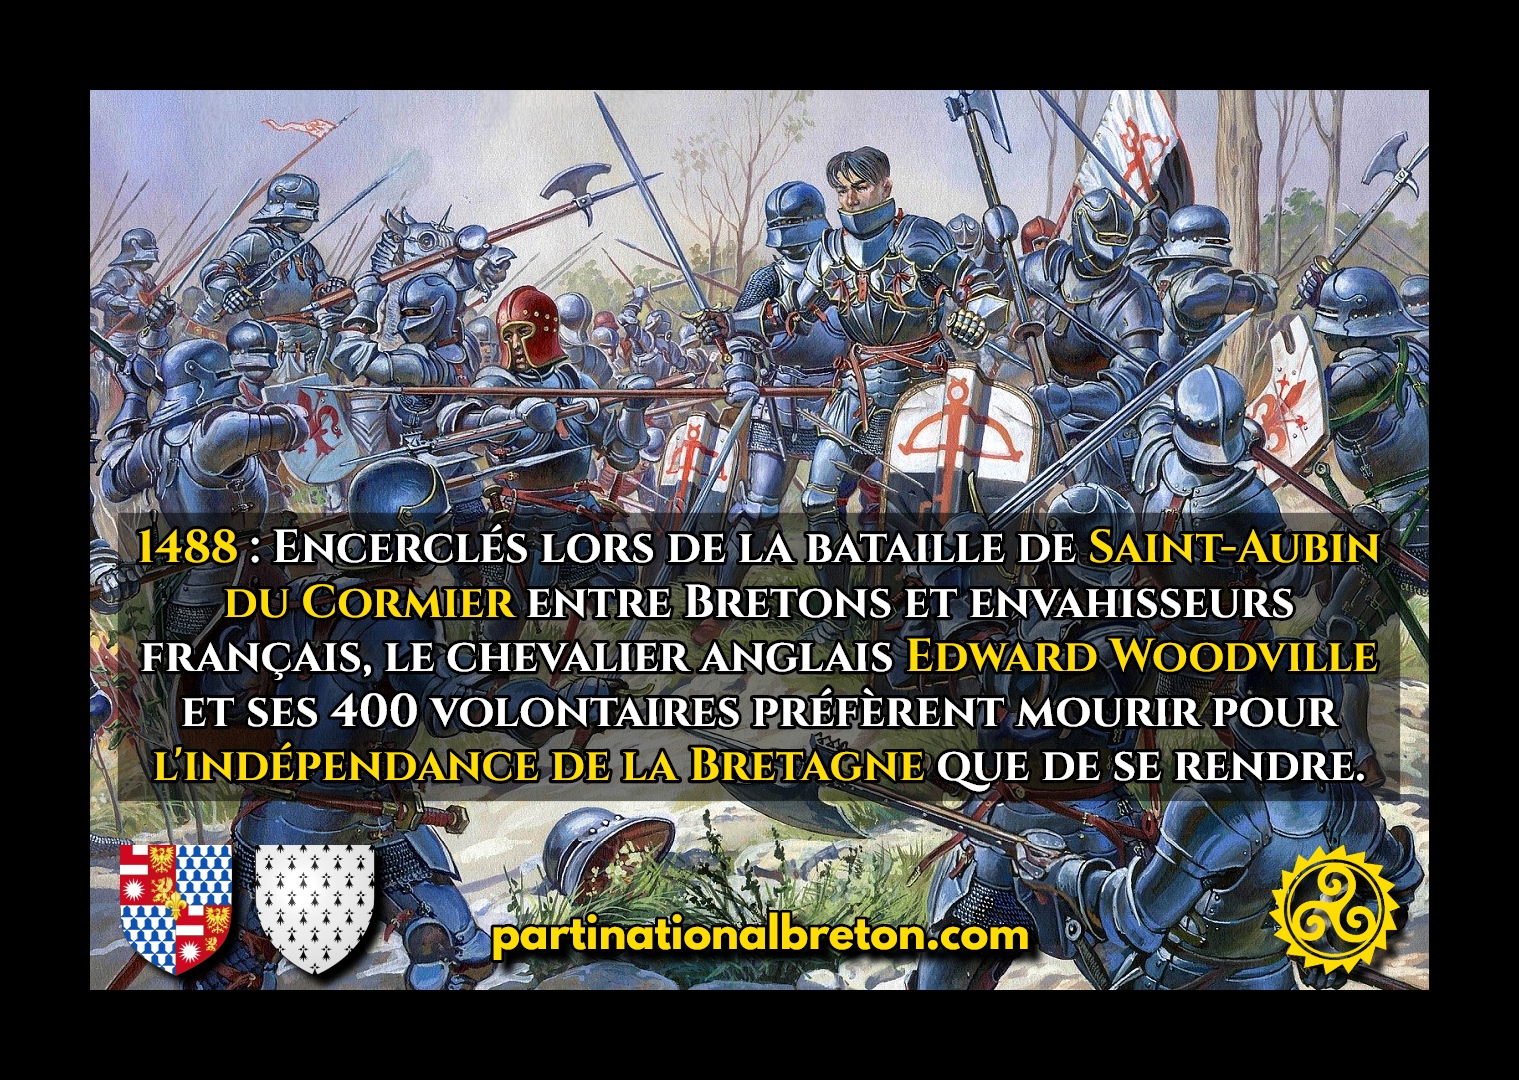 HAROZ BROADEL : Edward Woodville, serviteur de la Bretagne indépendante jusqu’au sacrifice suprême